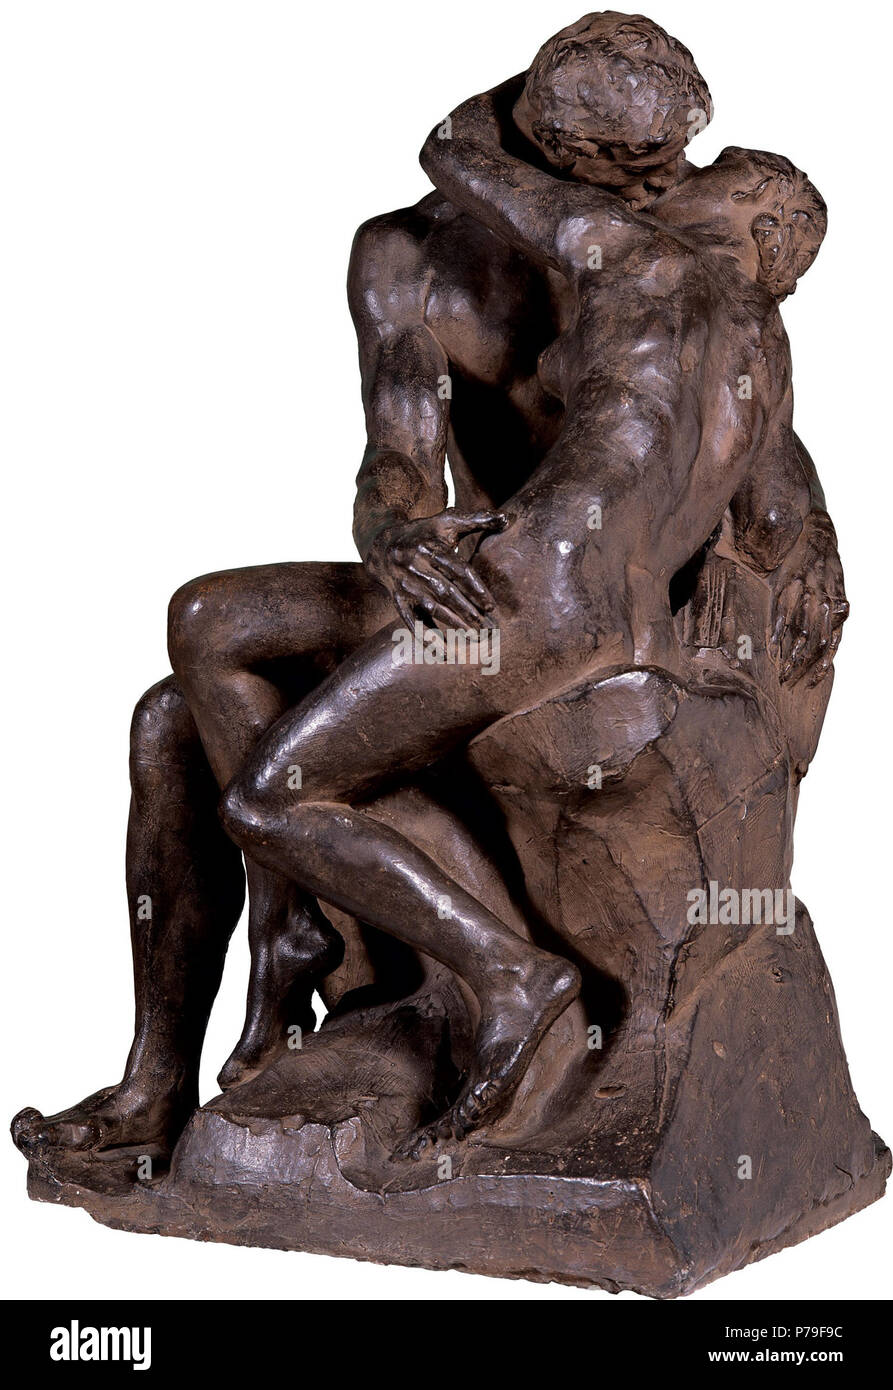 11 Le baiser - François-Auguste-René Rodin Stock Photo